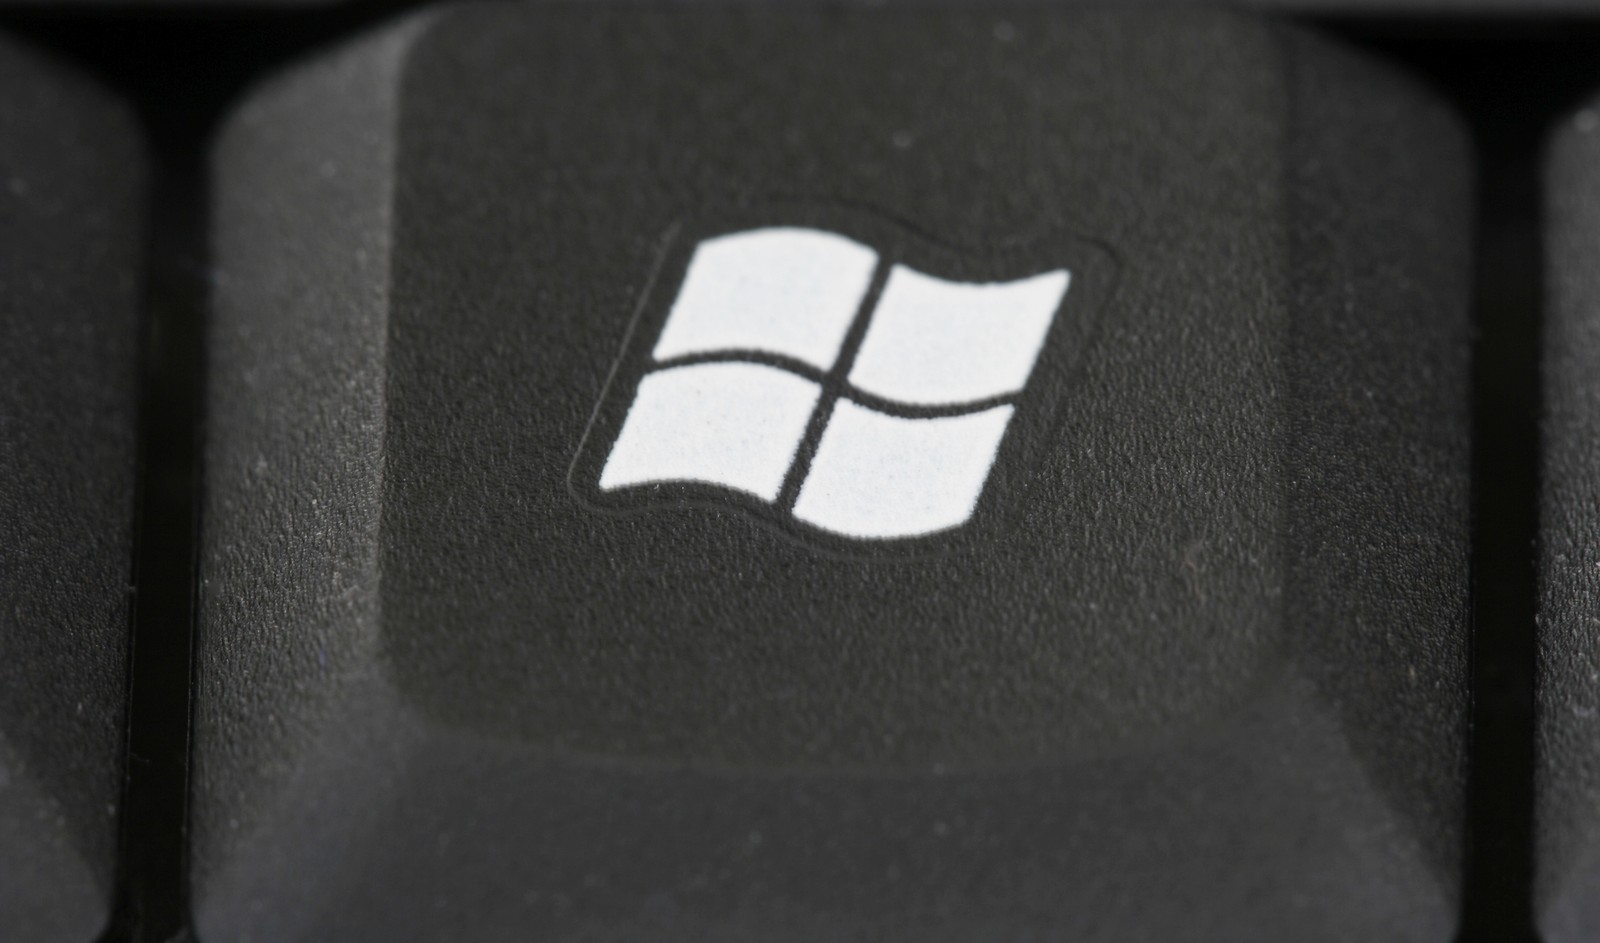 Am 14. Januar 2020 will Microsoft den Support für das Betriebssystem Windows 7 einstellen.